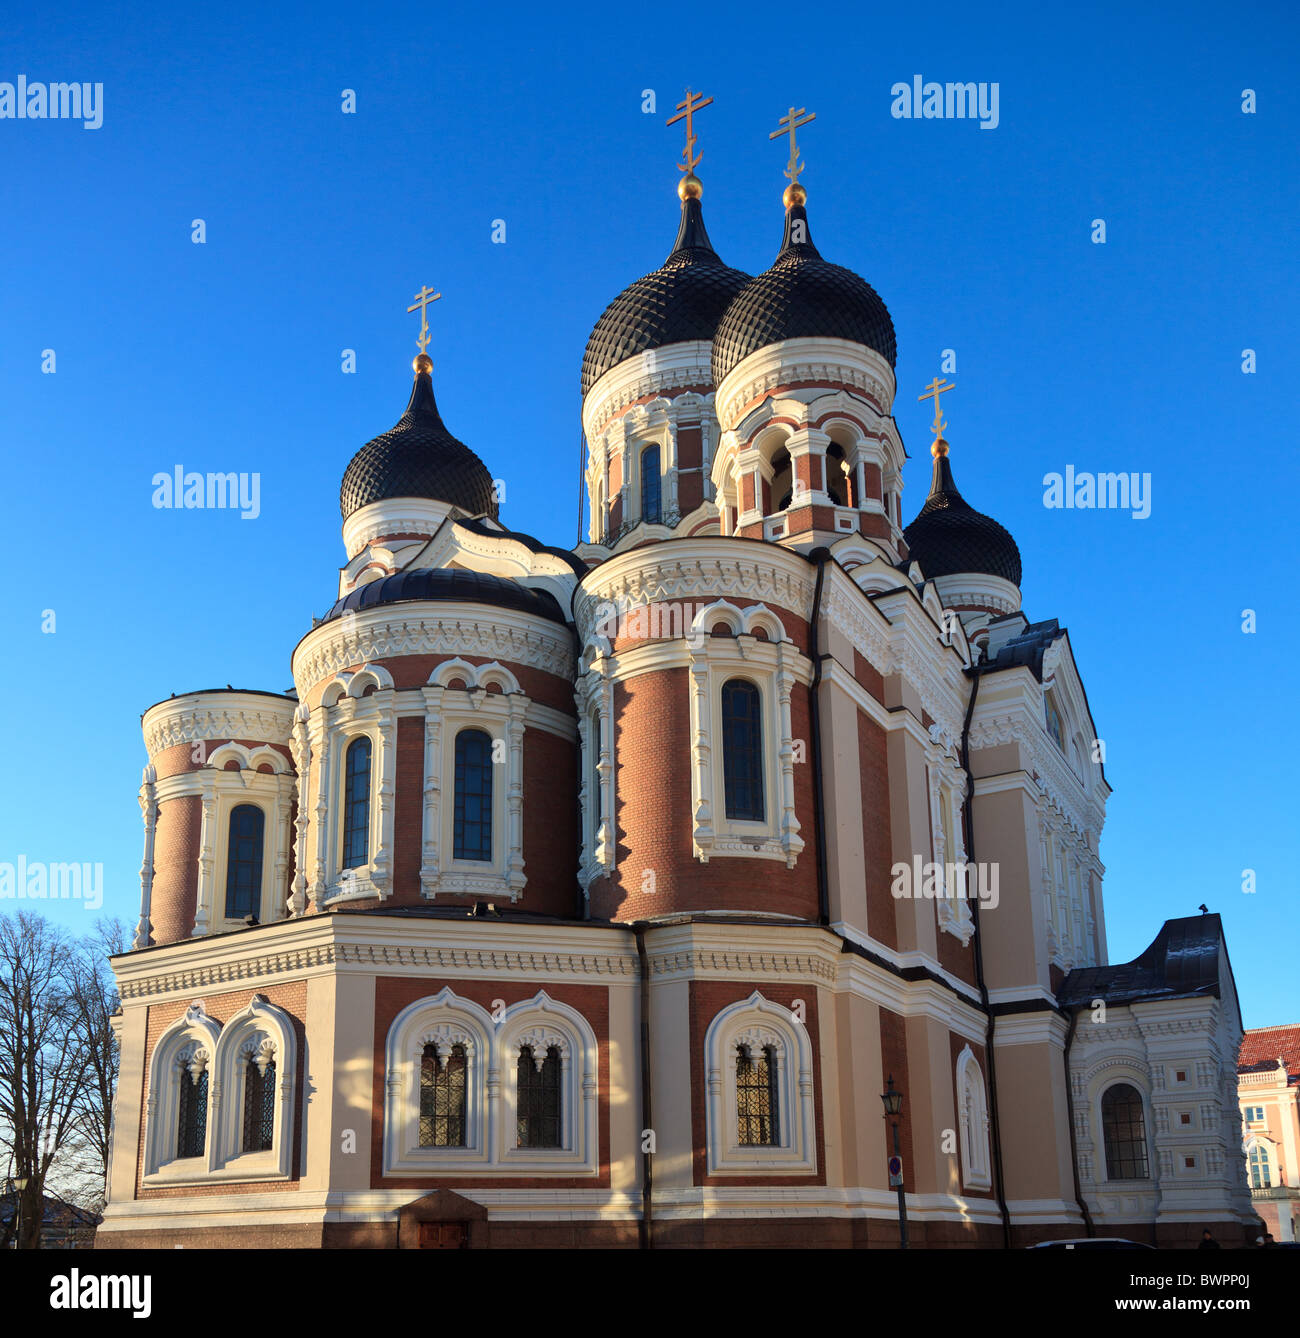 Cathédrale orthodoxe grec d'Alexandre Nevsky à Tallinn Estonie que le soleil est bas dans le ciel Banque D'Images